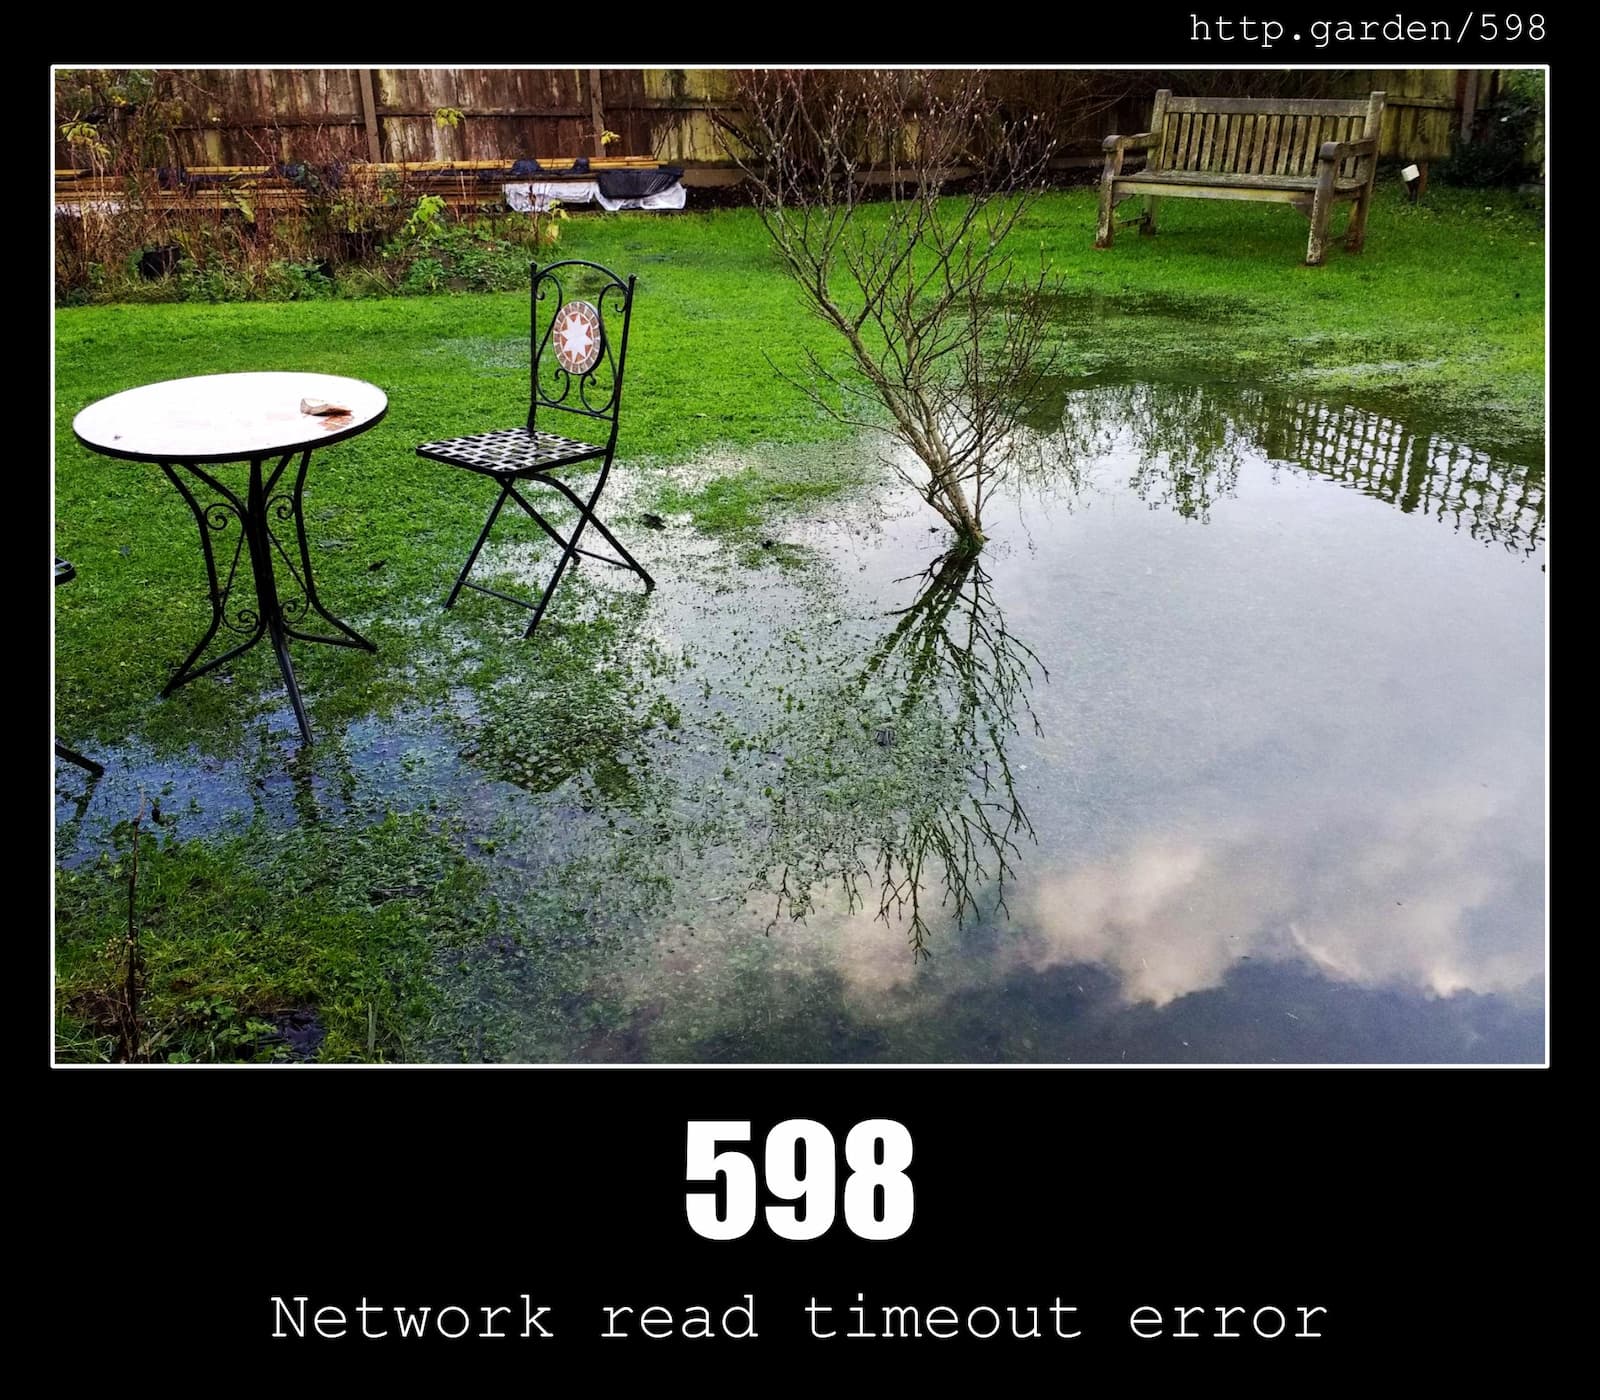 HTTP Status Code 598 Network read timeout error & Gardening